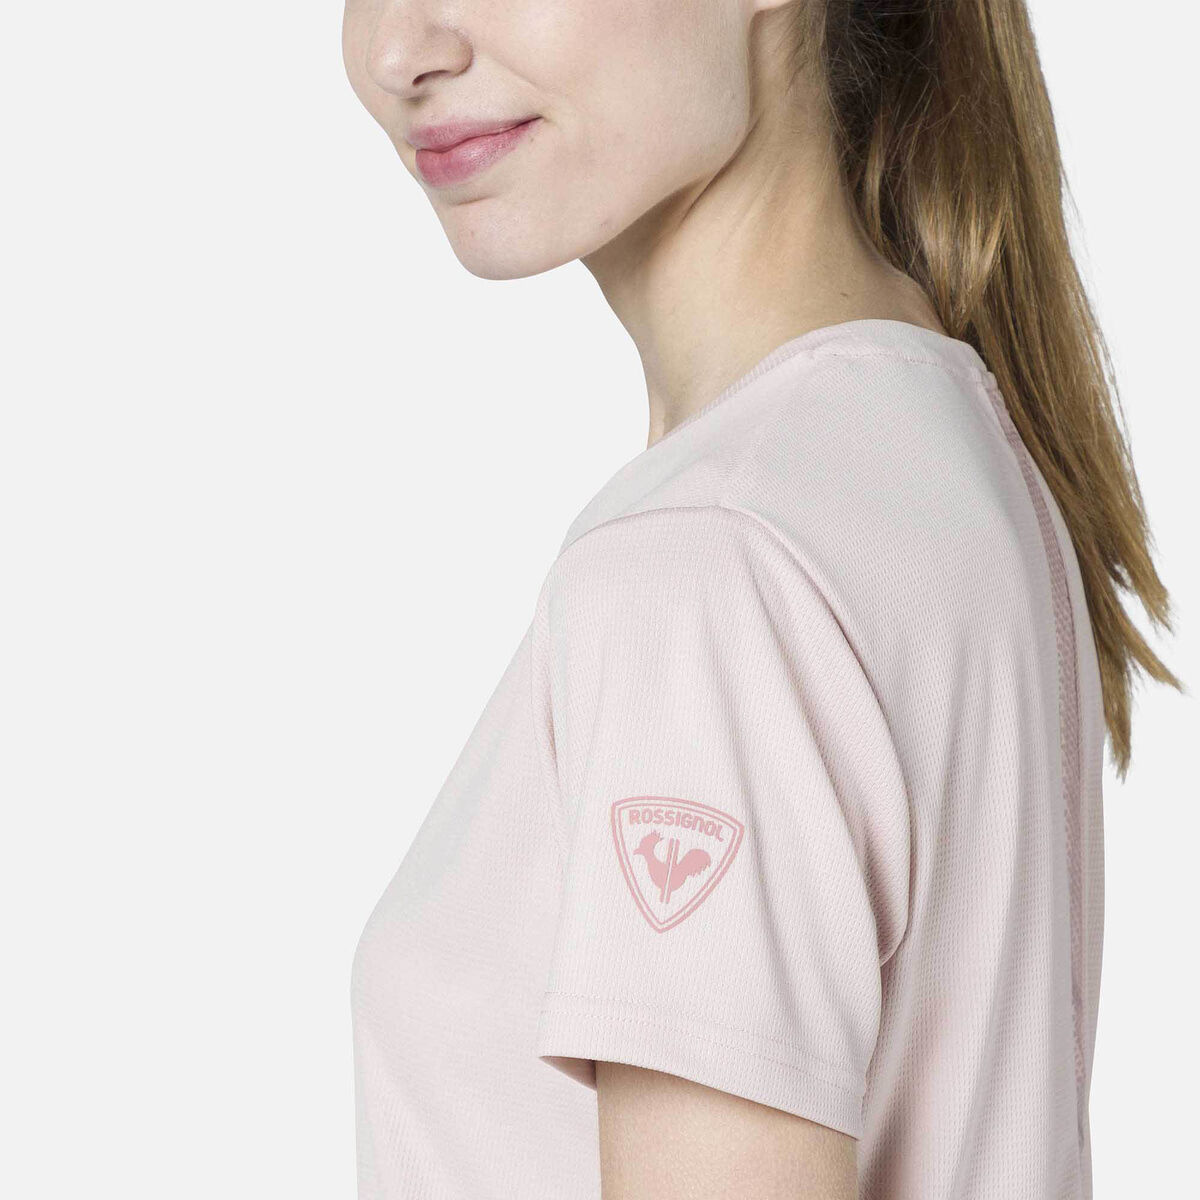 Einfarbiges Wander-T-Shirt für Damen